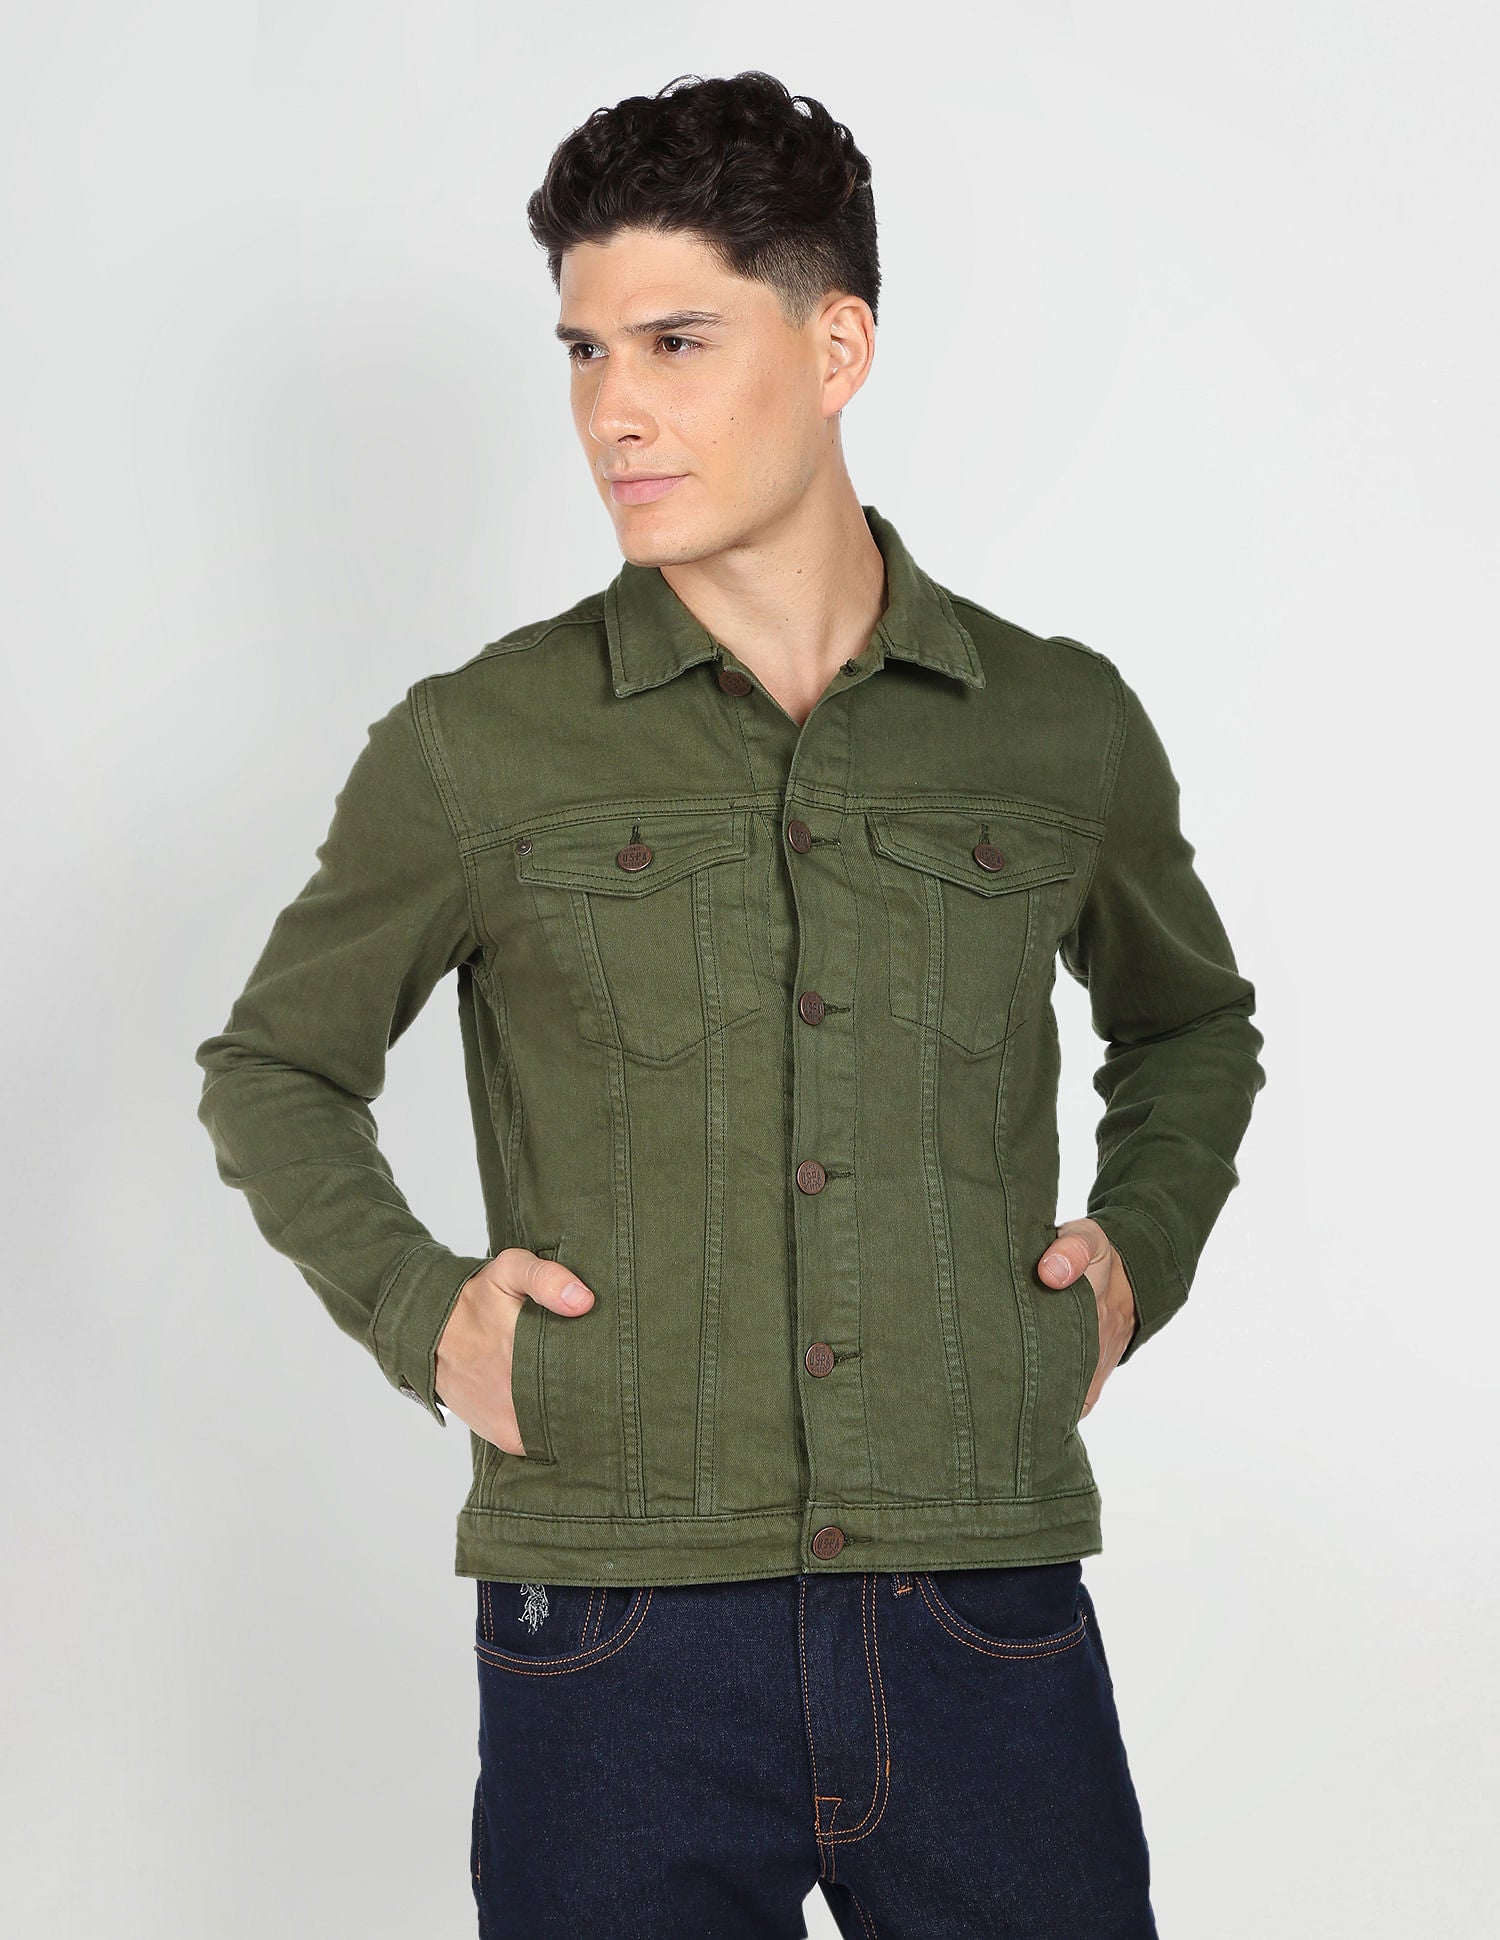 ZXHACSJ Men's Autumn Winter Button Solid Color Vintage Denim Jacket Tops  Blouse Coat Army Green XL - Walmart.com